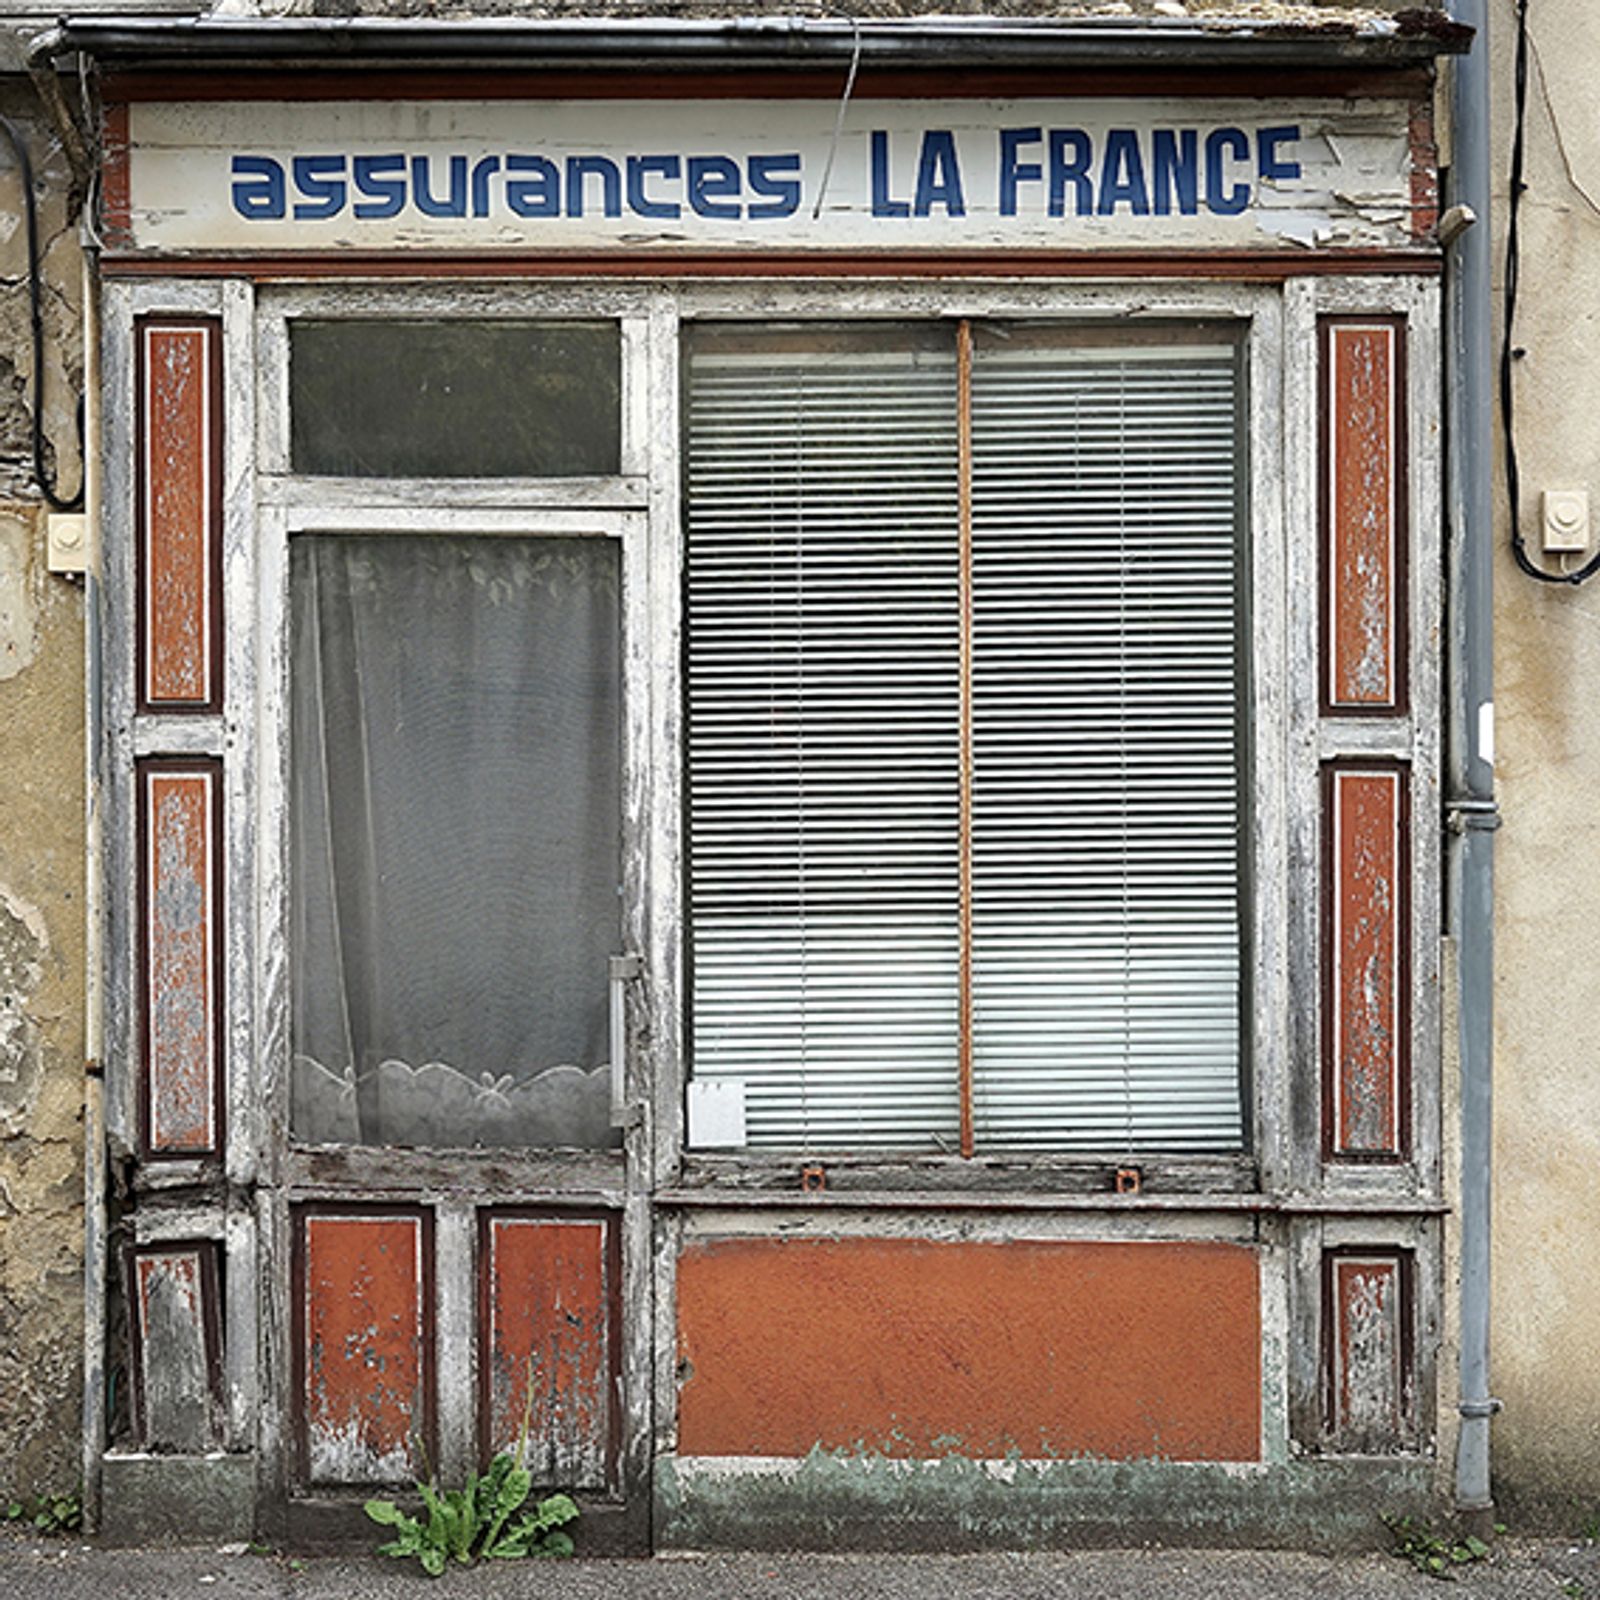 © Thibaut Derien - Assurances la france